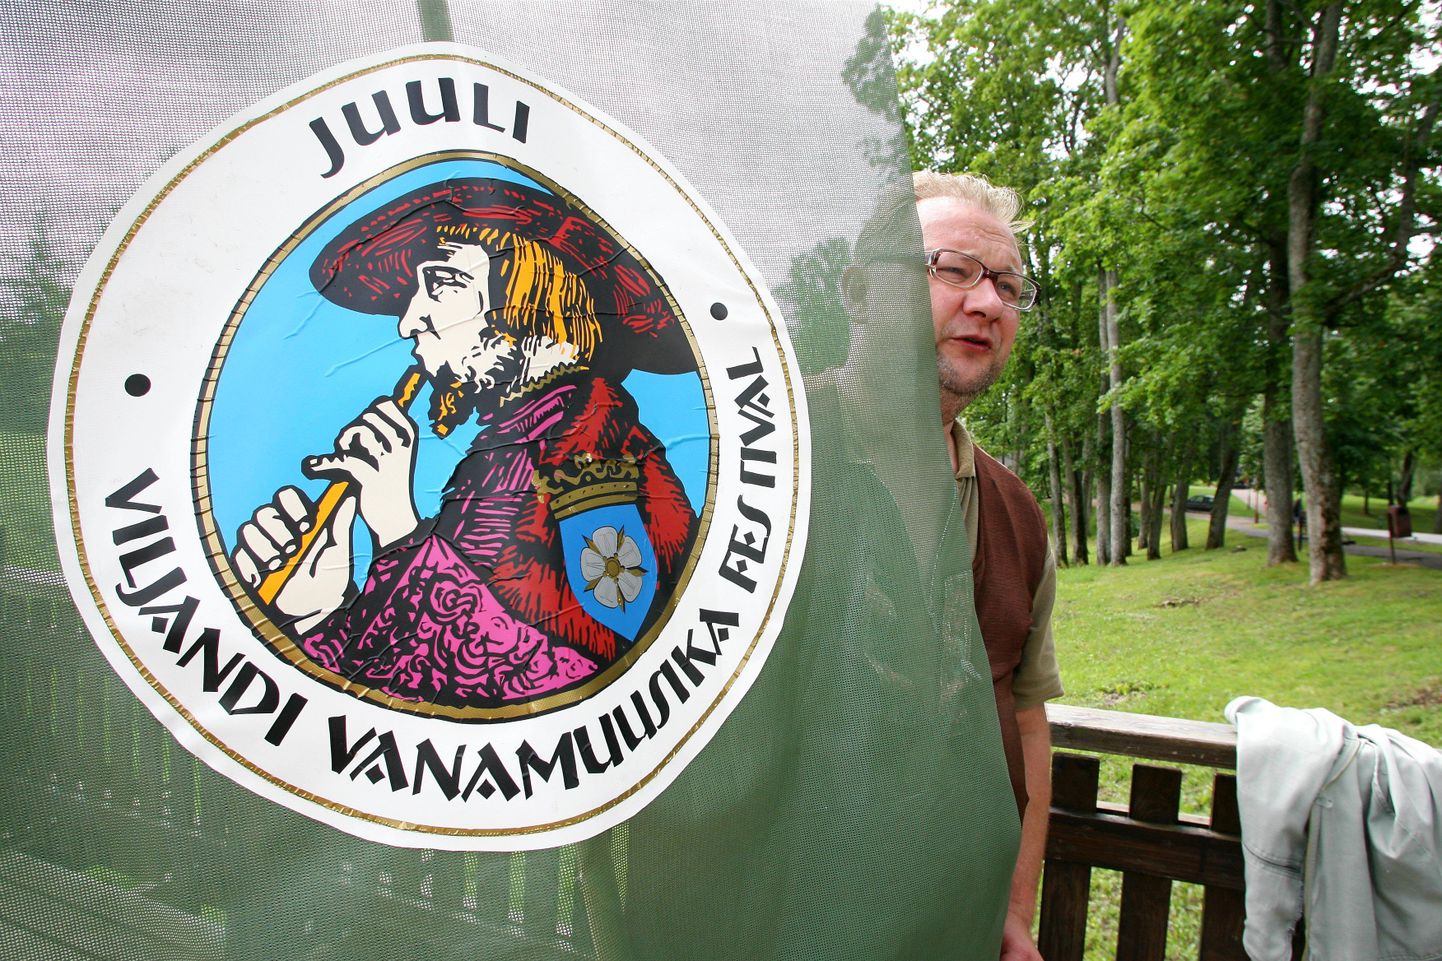 12.–17. juulini peetakse Viljandis vanamuusika festivali.